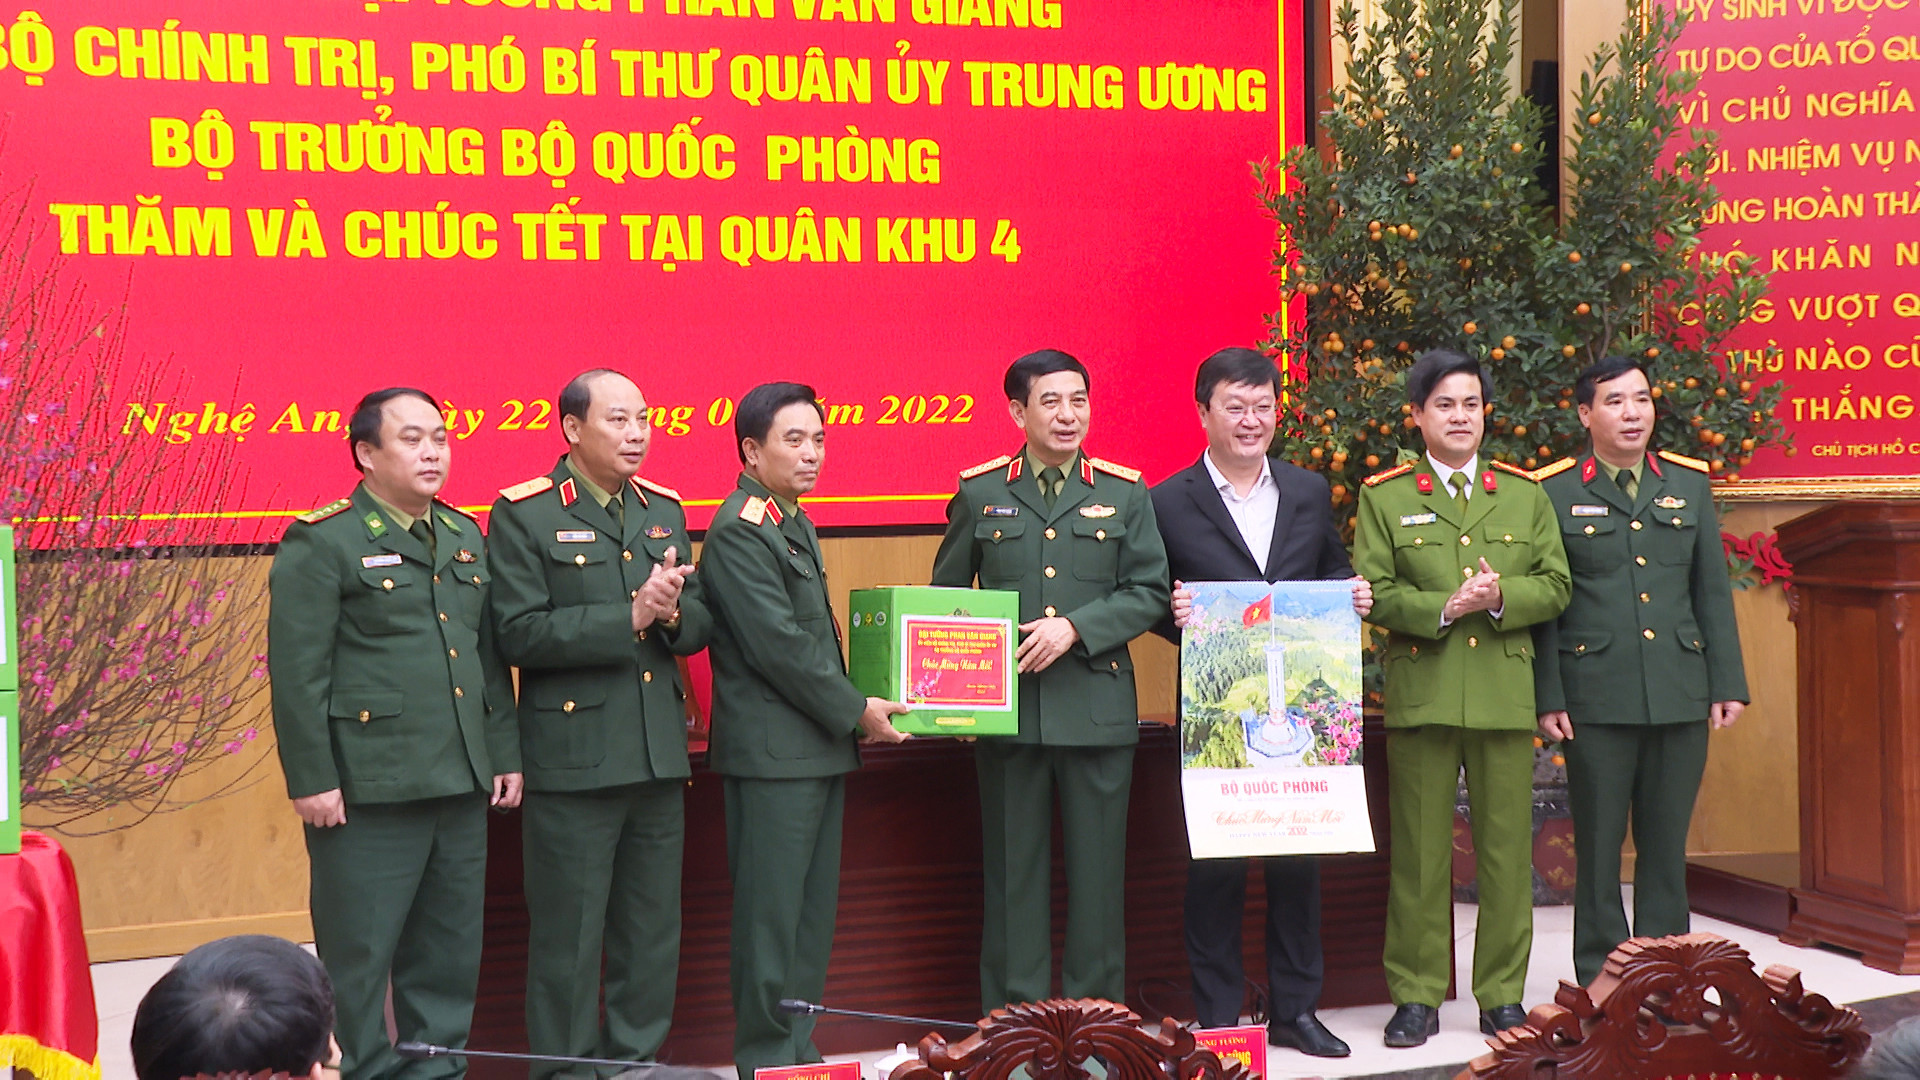 Đại tướng Phan Văn Giang trao quà, chúc Tết lãnh đạo Quân khu 4 và tỉnh Nghệ An. Ảnh: Trần Dũng